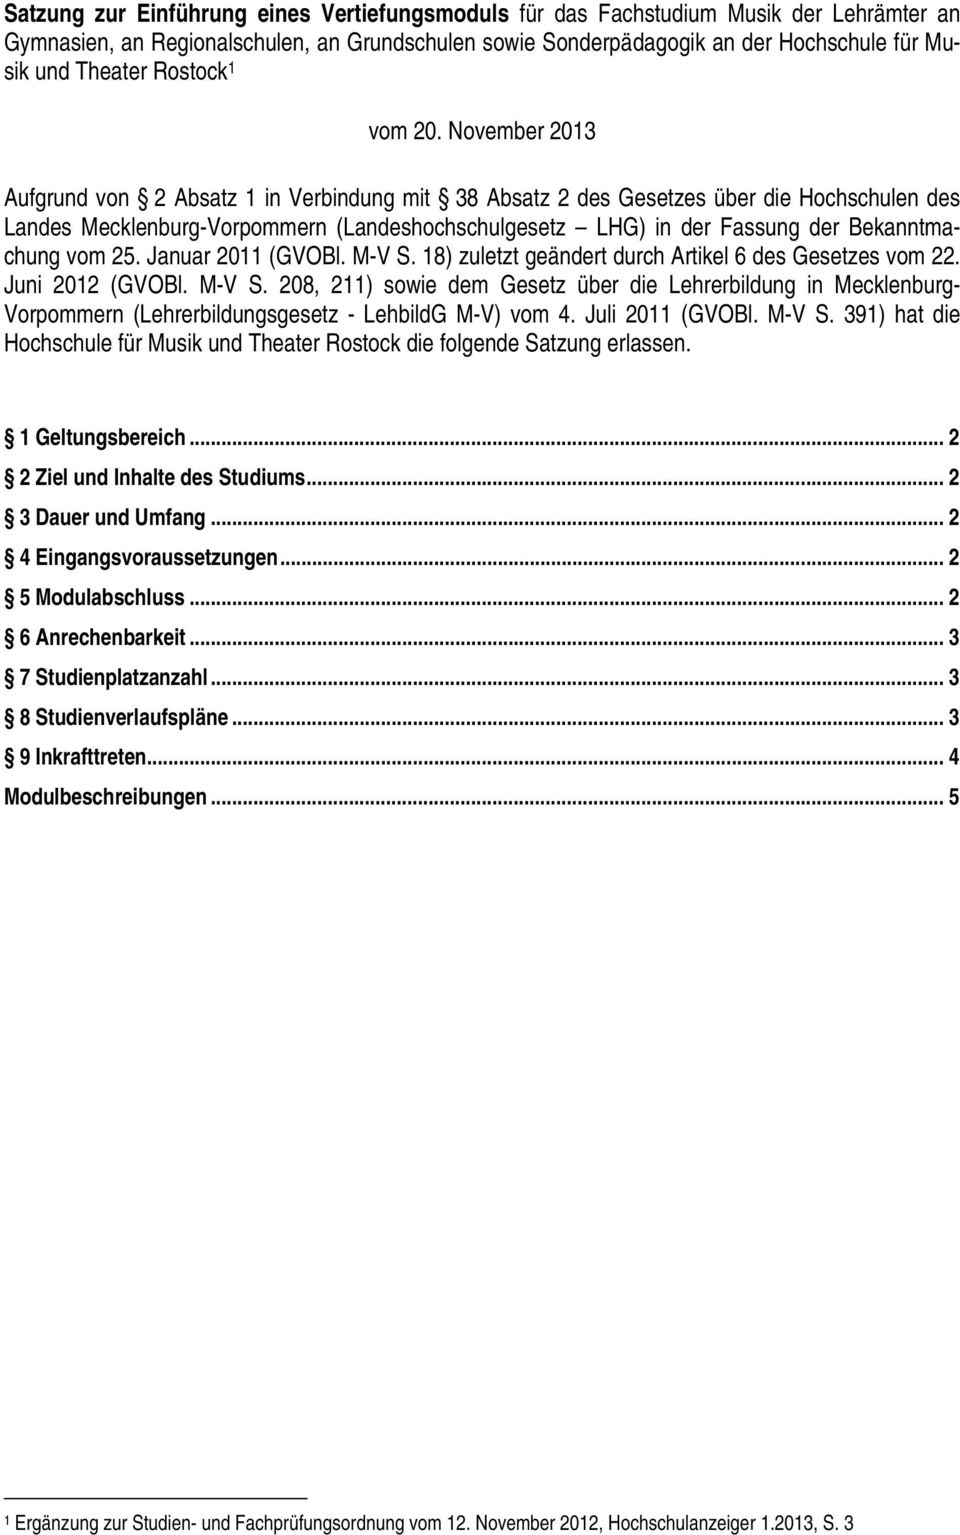 November 2013 Aufgrund von 2 Absatz 1 in Verbindung mit 38 Absatz 2 des Gesetzes über die Hochschulen des Landes Mecklenburg-Vorpommern (Landeshochschulgesetz LHG) in der Fassung der Bekanntmachung